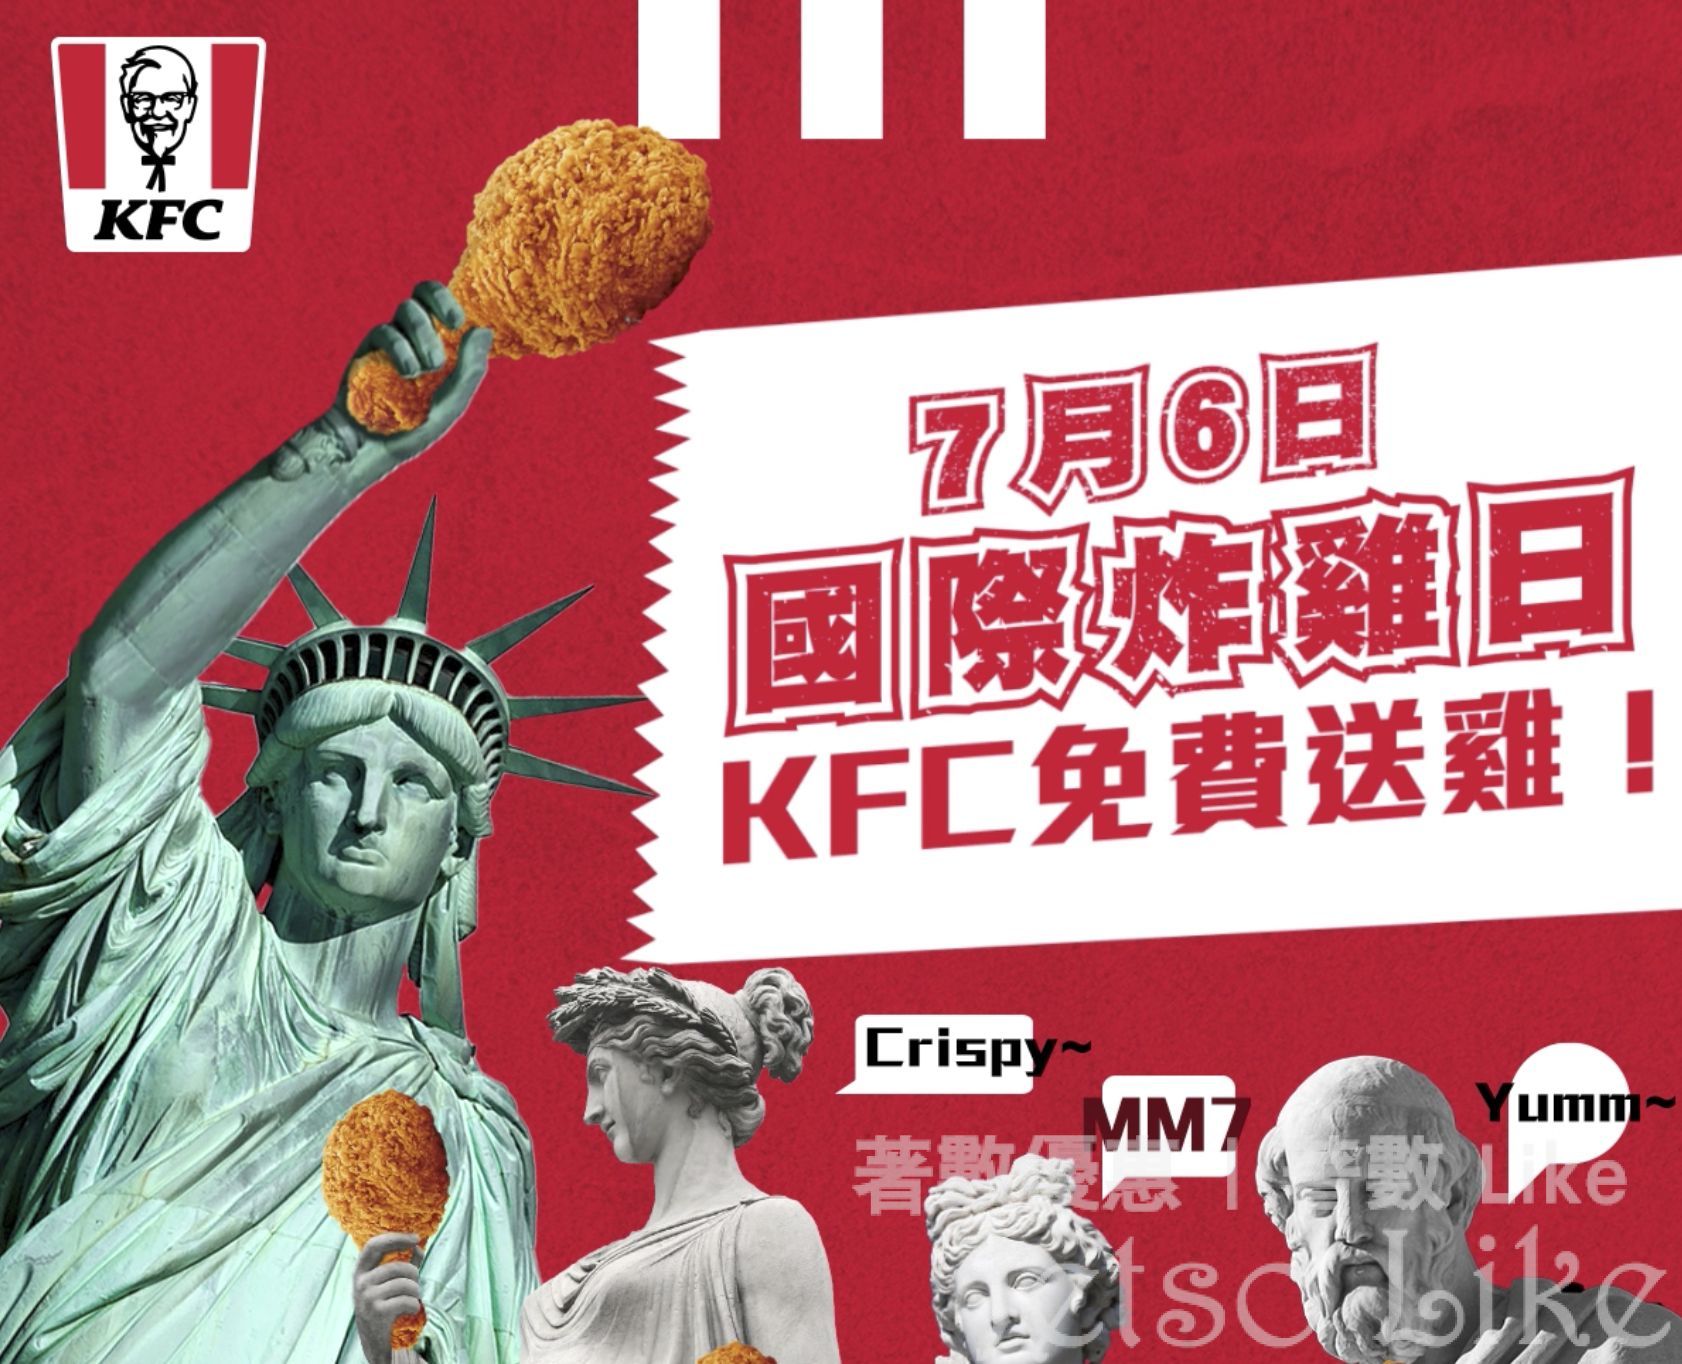 KFC 國際炸雞日 免費派炸雞